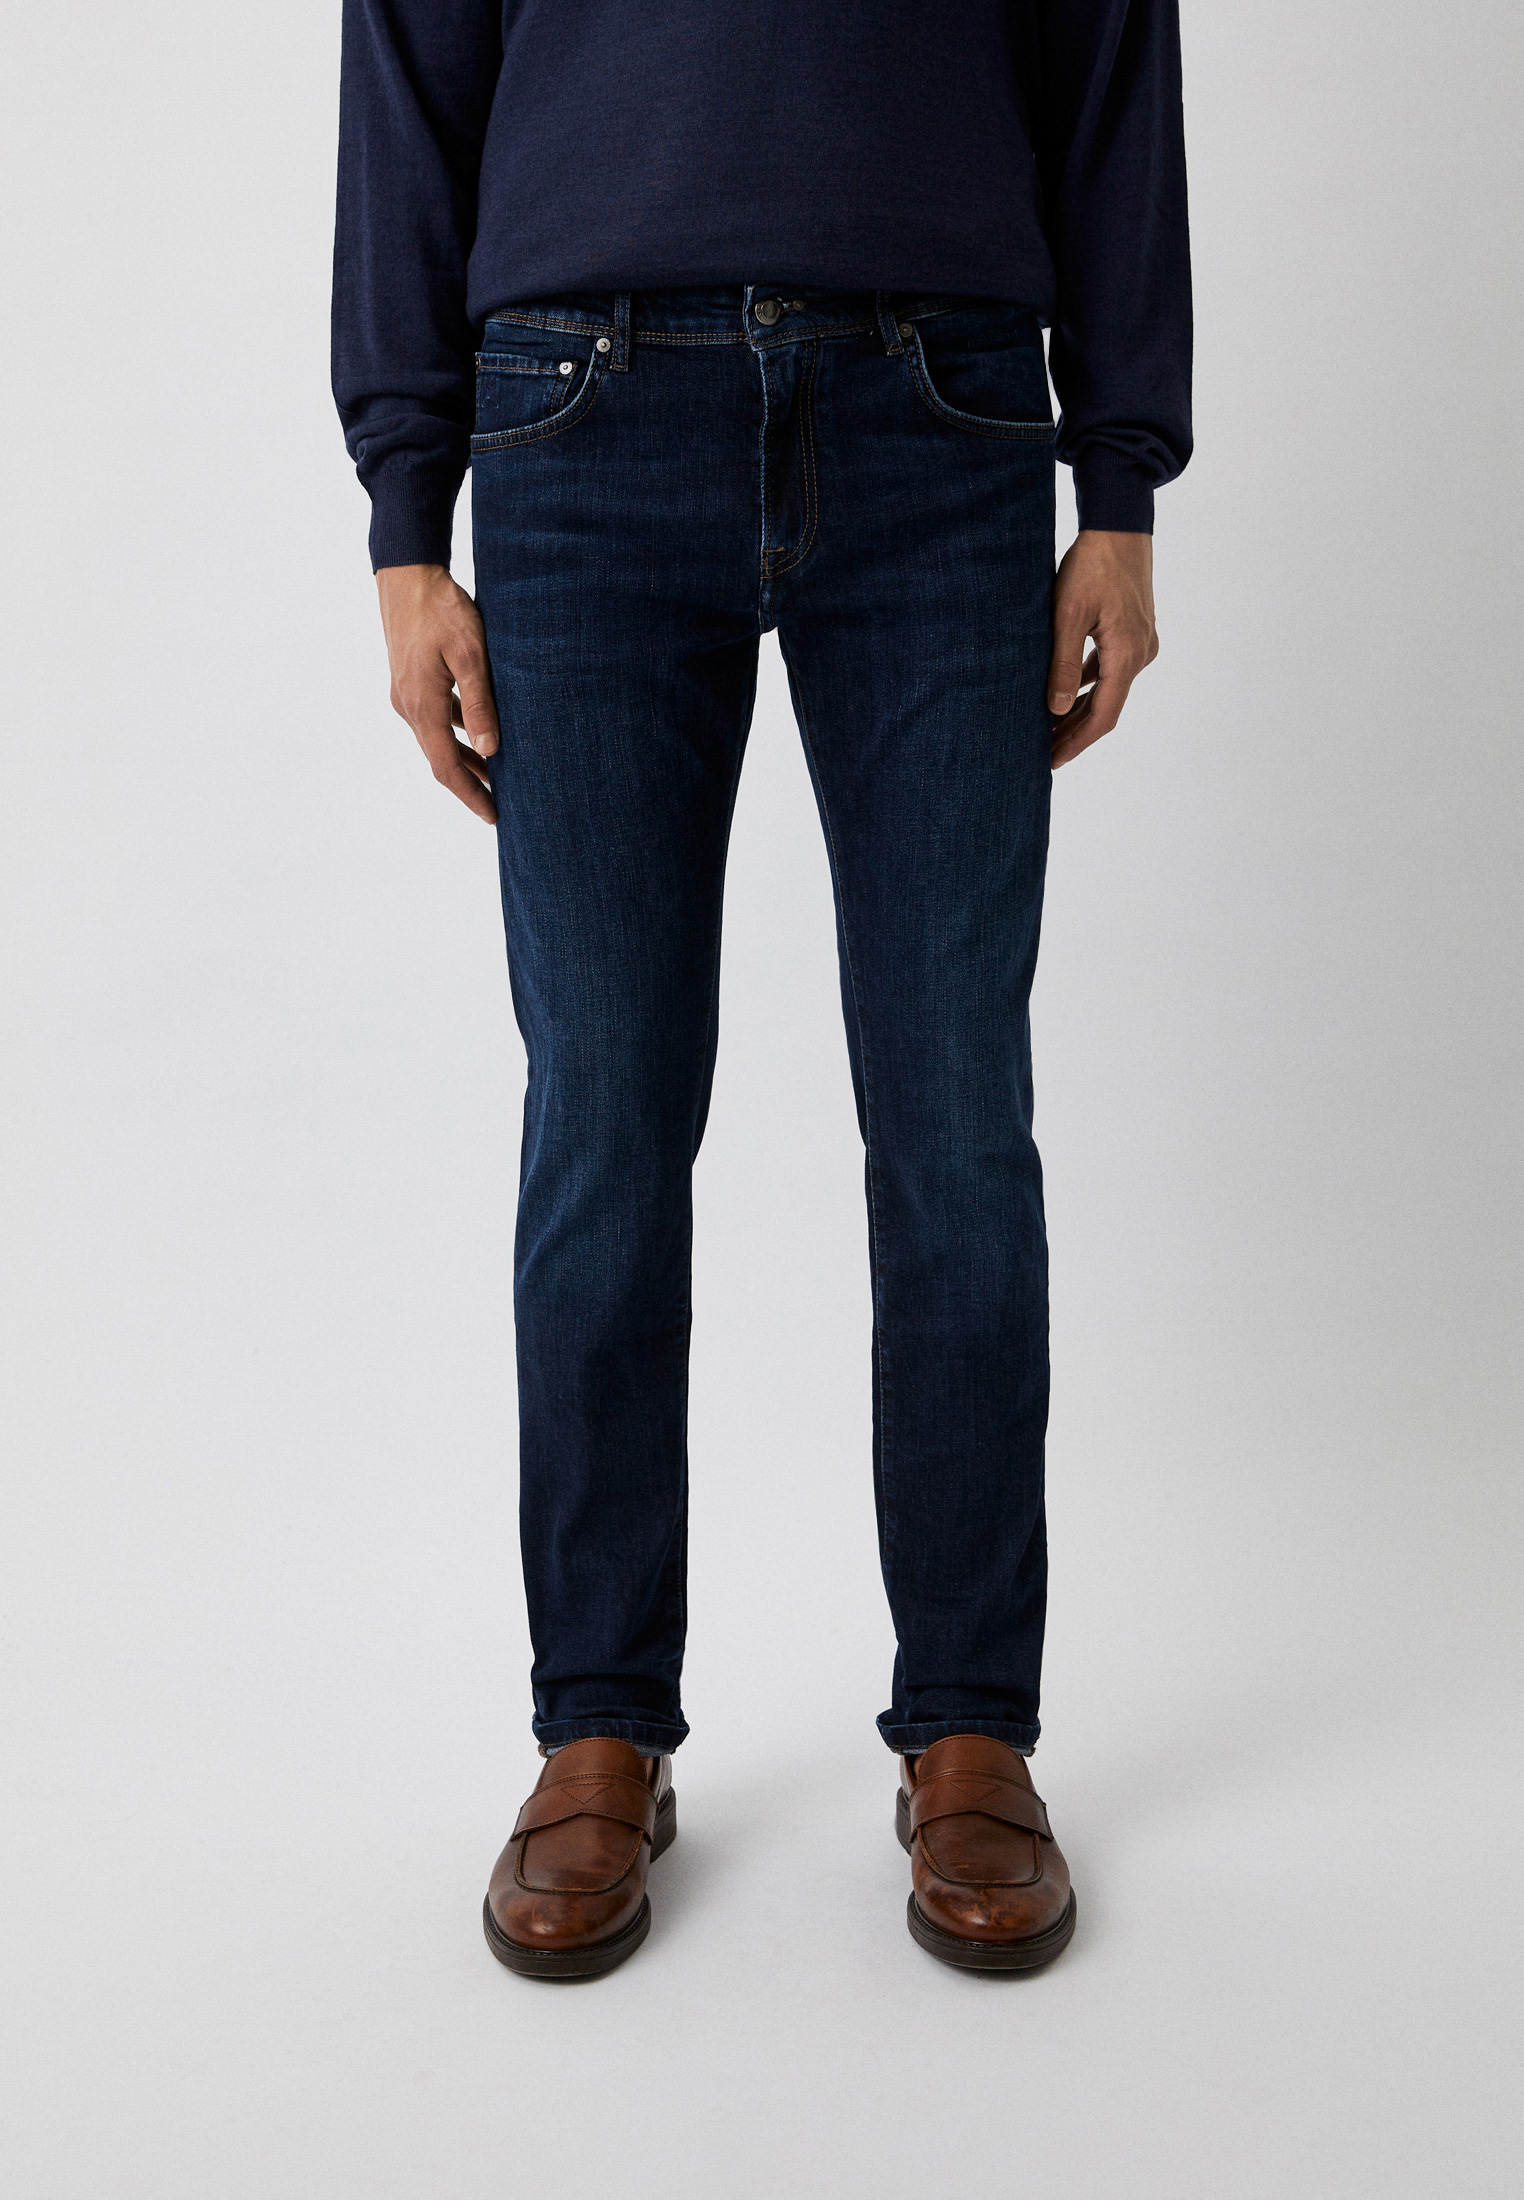 Зауженные джинсы Hackett London HM212516R: изображение 1